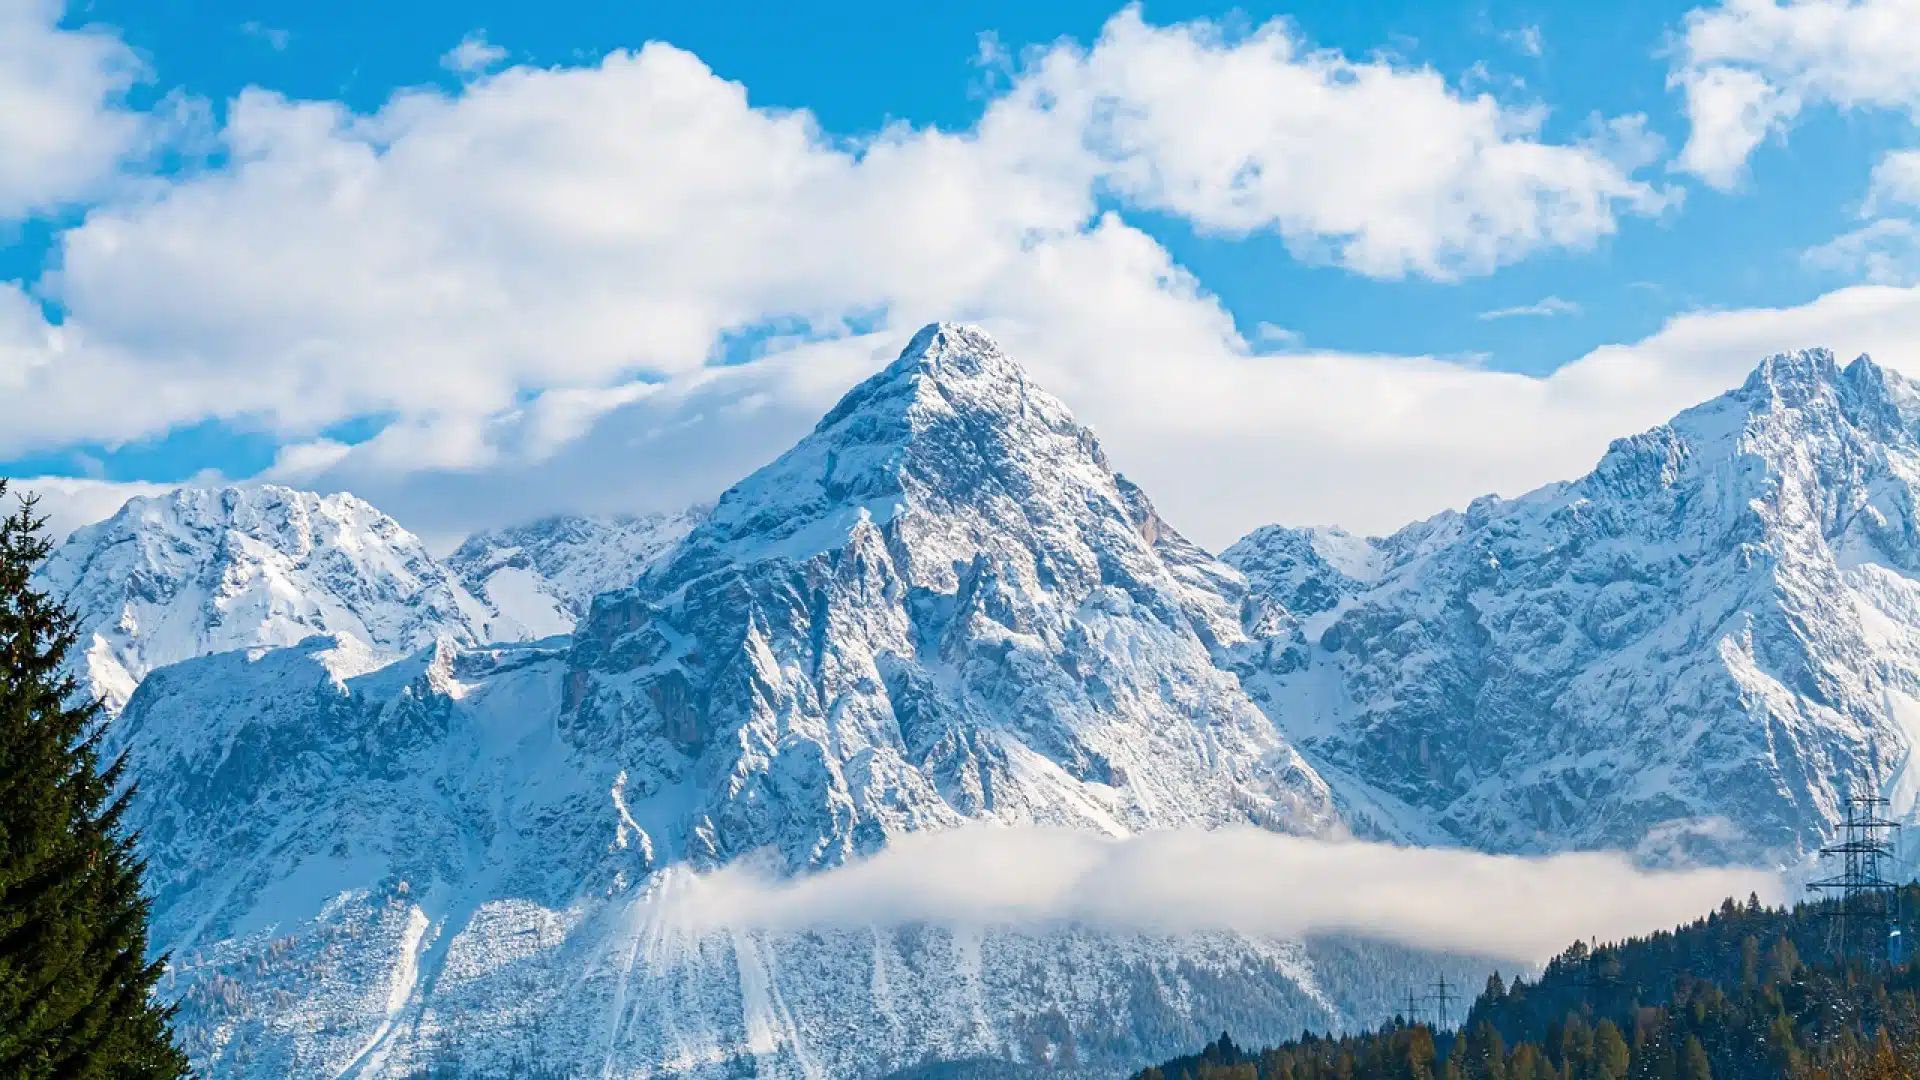 Des vacances inoubliables : Les avantages de réserver une location dans Les 2 Alpes